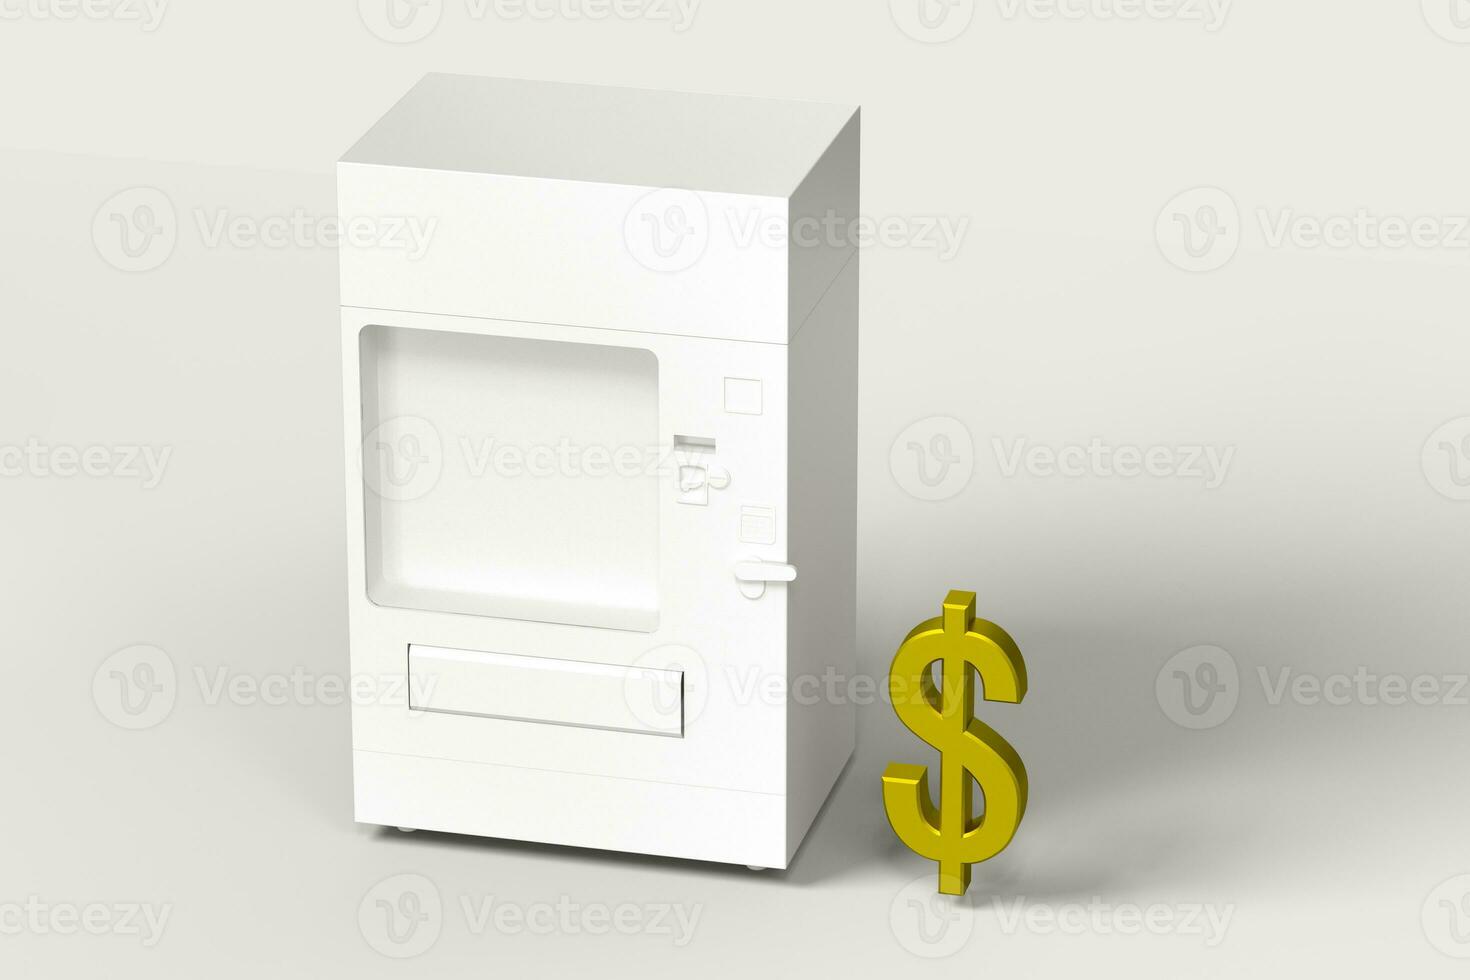 le blanc modèle de vente machine et argent modèle, 3d le rendu. photo